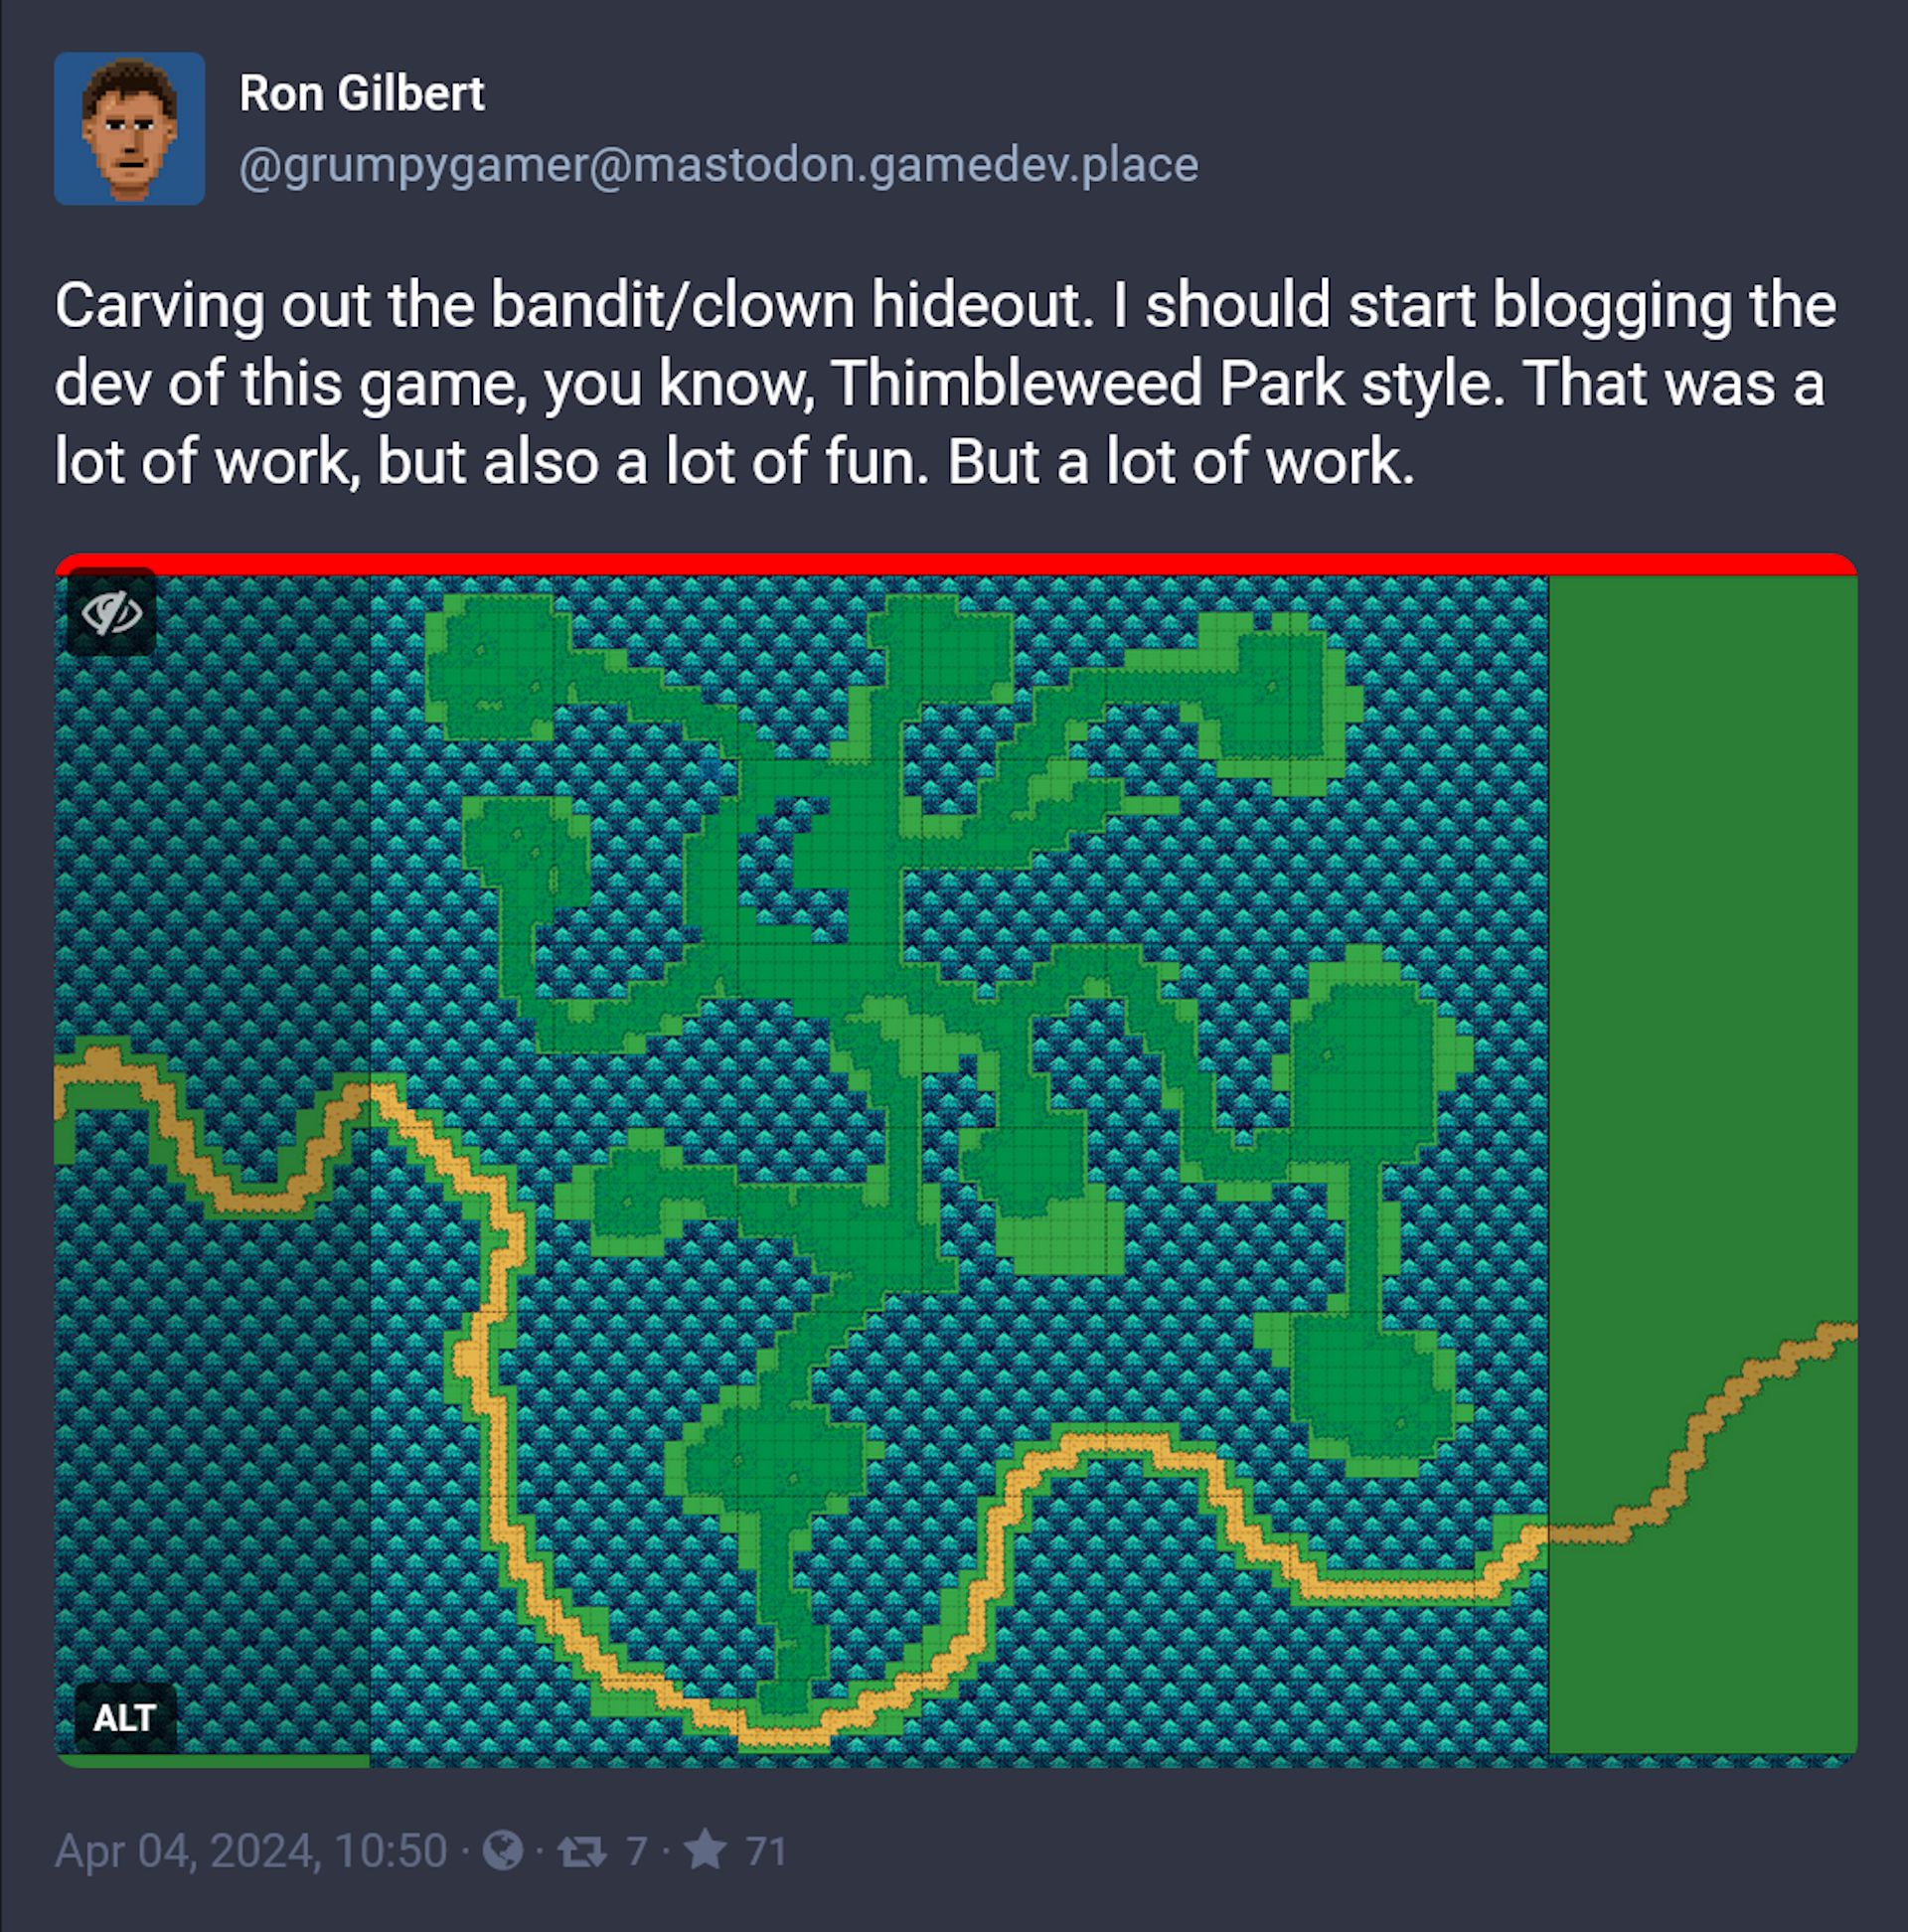 In-progress image of Ron Gilbert's next game: classic Zelda meets Diablo meets Thimbleweed Park